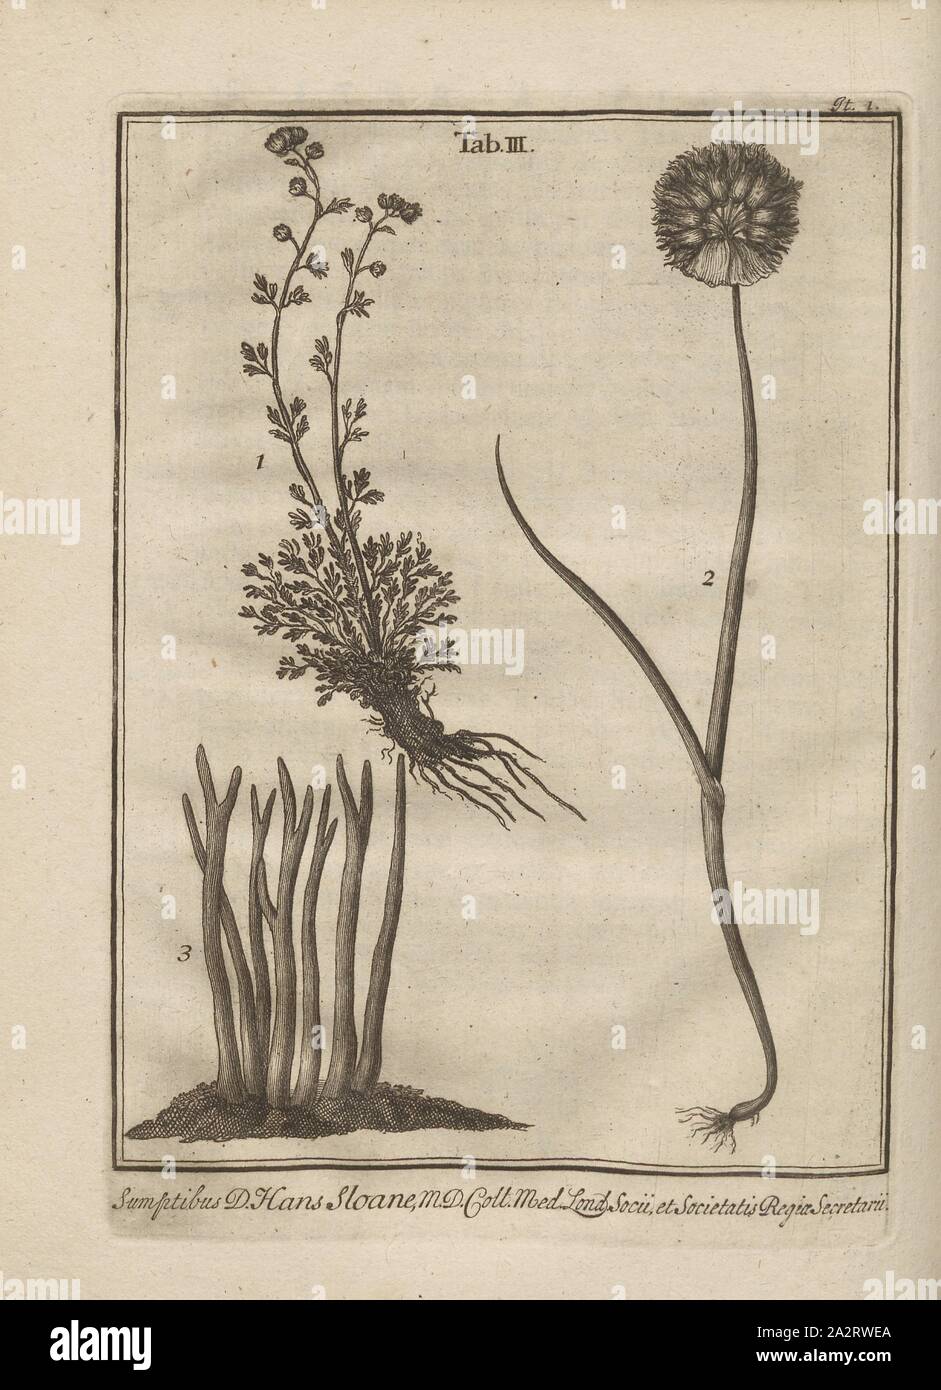 Representation of different alpine plants 1, Preparation of Various Alpine Plants: Absinthium seriphium montanum candidum (Fig. 1), Allium montanum sphaerocephalon purpureum (Fig. 2), Coralloides flava (Fig. 3), Table 3 (Iter 1), p, 1723, Johann Jakob Scheuchzer: Ouresiphoites Helveticus, sive, itinera per Helvetiae alpinas regiones facta annis MDCCII, MDCIII, MDCCIV, MDCCV, MDCCVI, MDCCVII, MDCCIX, MDCCX, MDCCXI (...). Lugduni Batavorum [Leiden]: typis ac sumptibus Petri van der Aa, MDCCXXIII [1723 Stock Photo